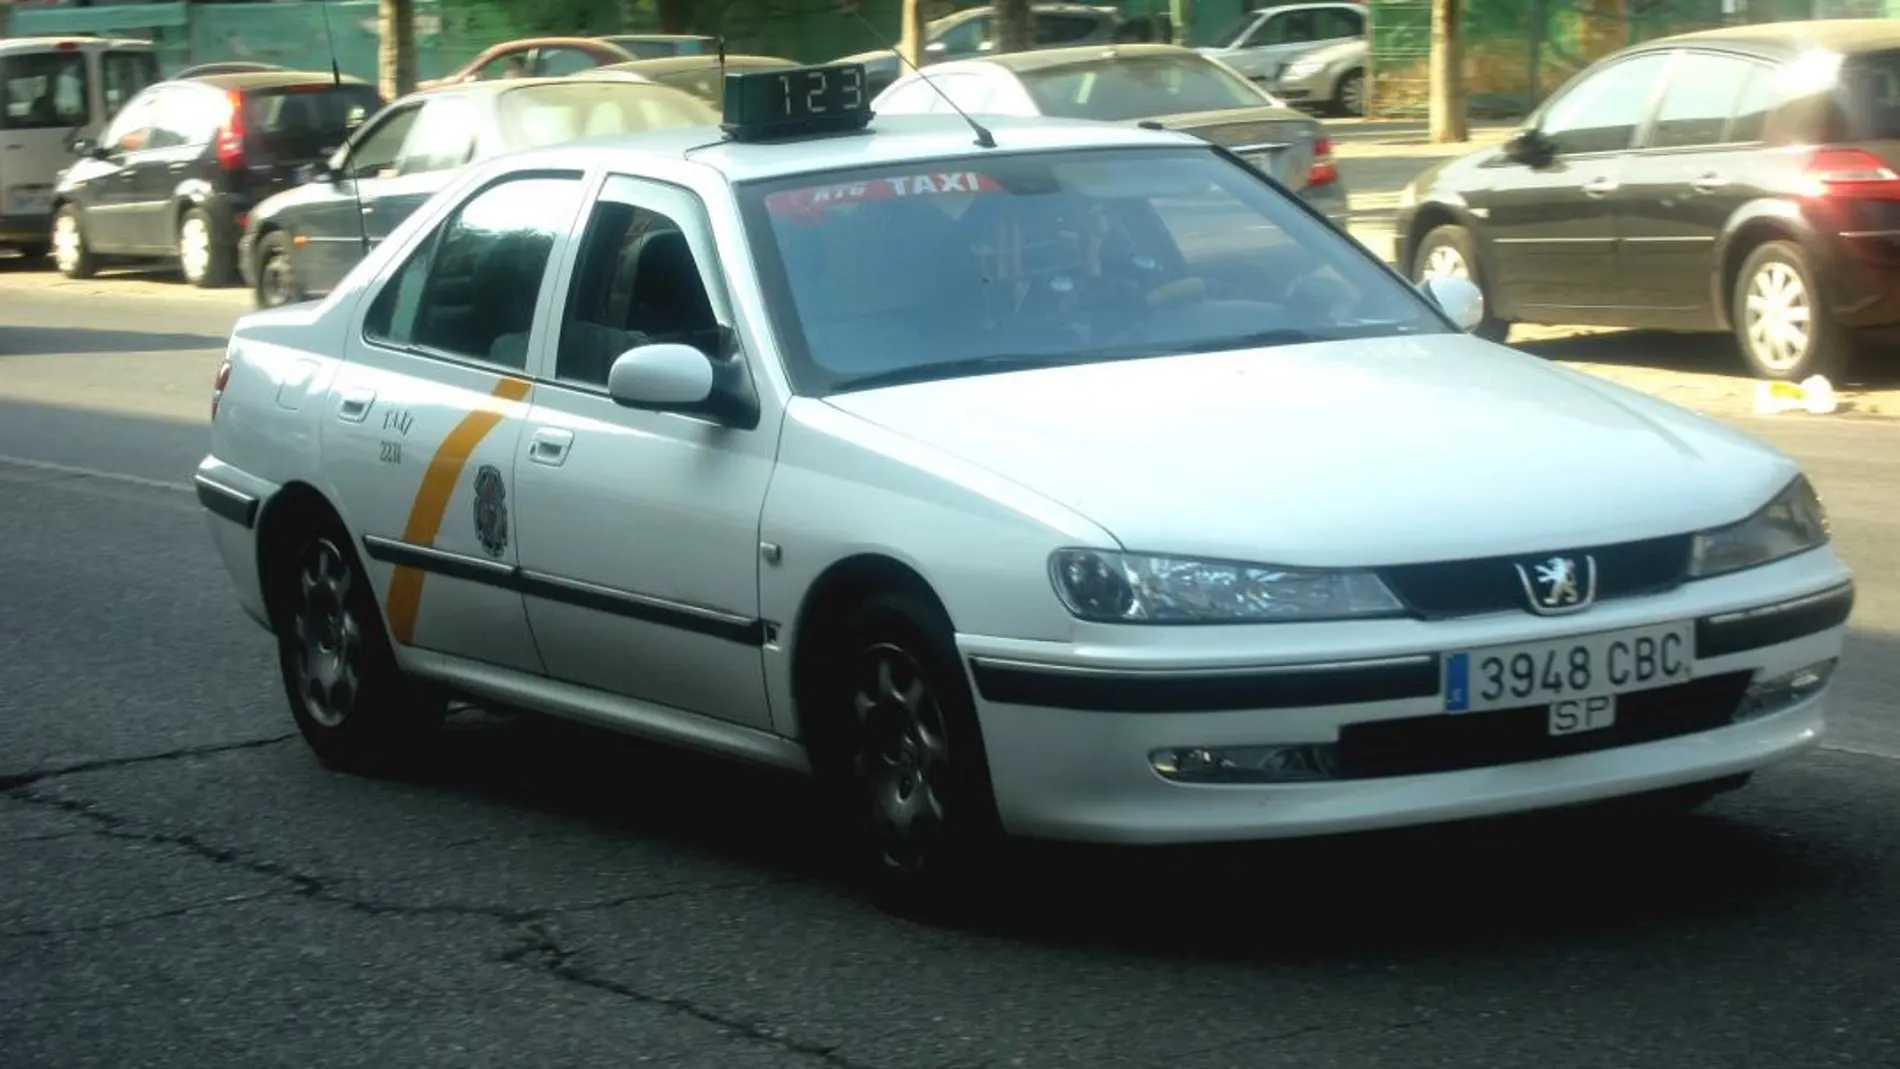 La presidenta de Foro Taxi interpone una denuncia por la «arbitraria"inmovilización de su coche